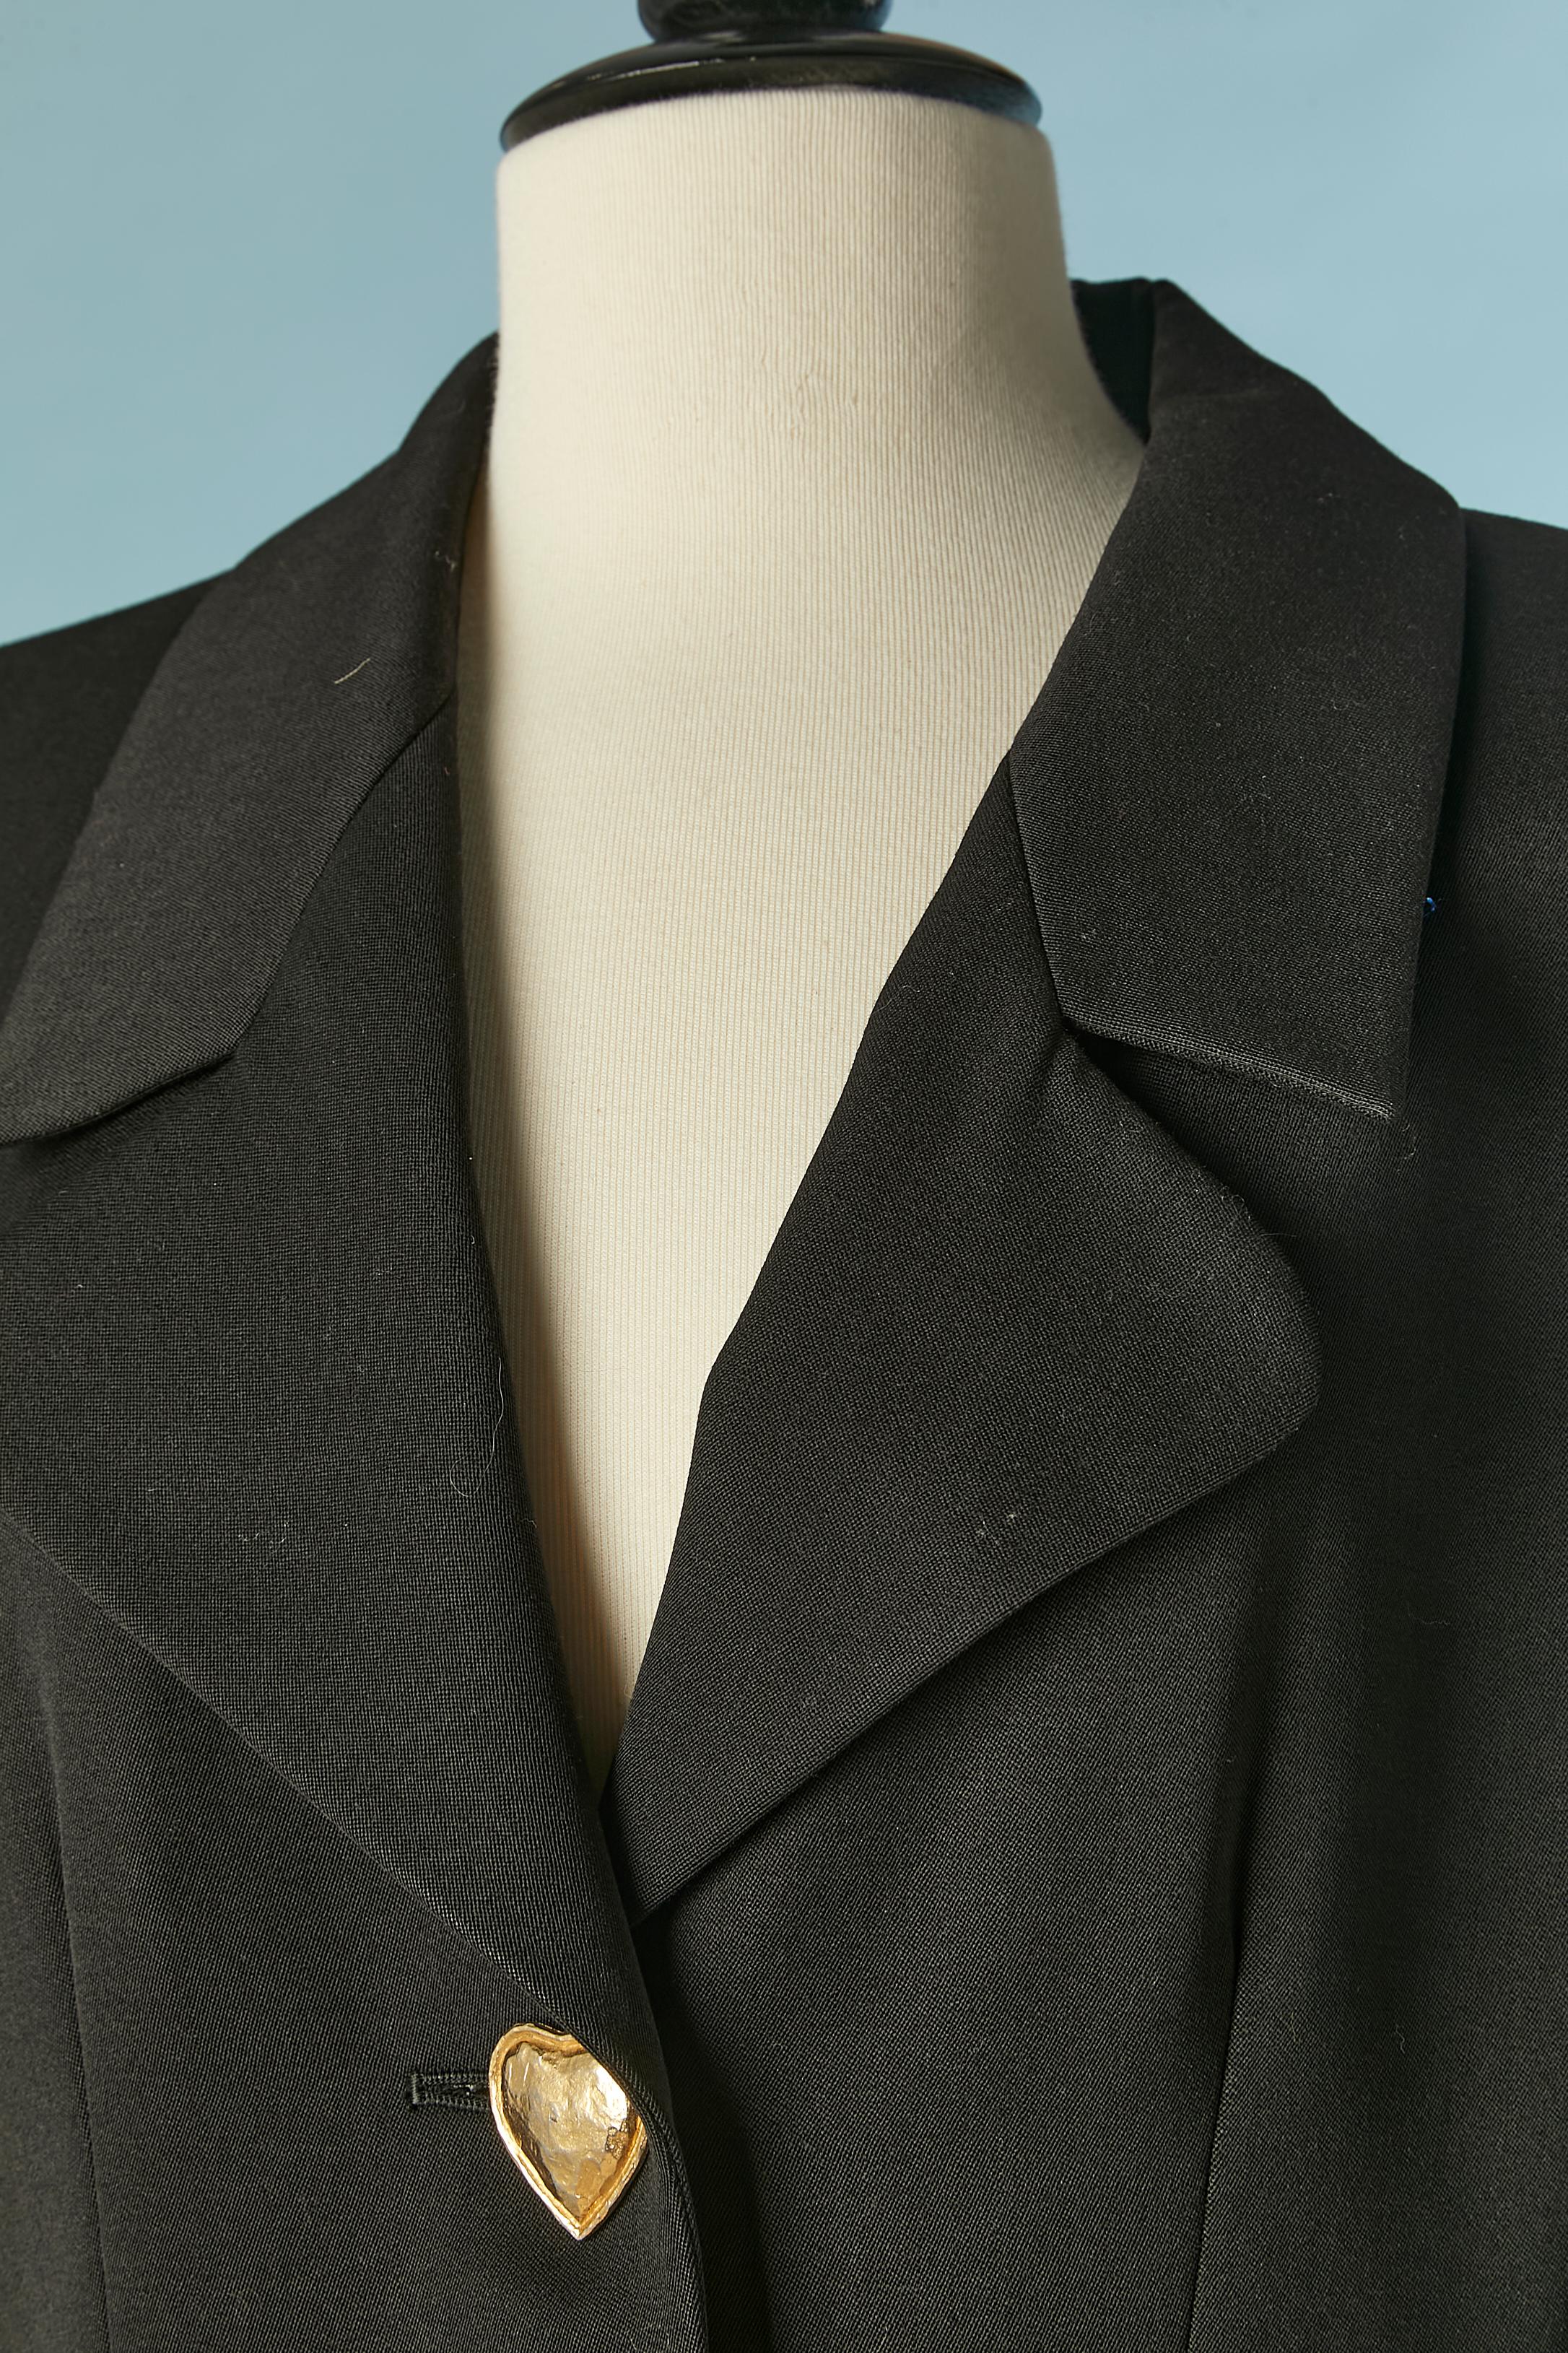 Schwarze einreihige Jacke mit goldenen Herzknöpfen. Hauptstoff: Wolle. Futter: Acetat und Viskose
SIZE 40(Fr) 8 (Us) M 